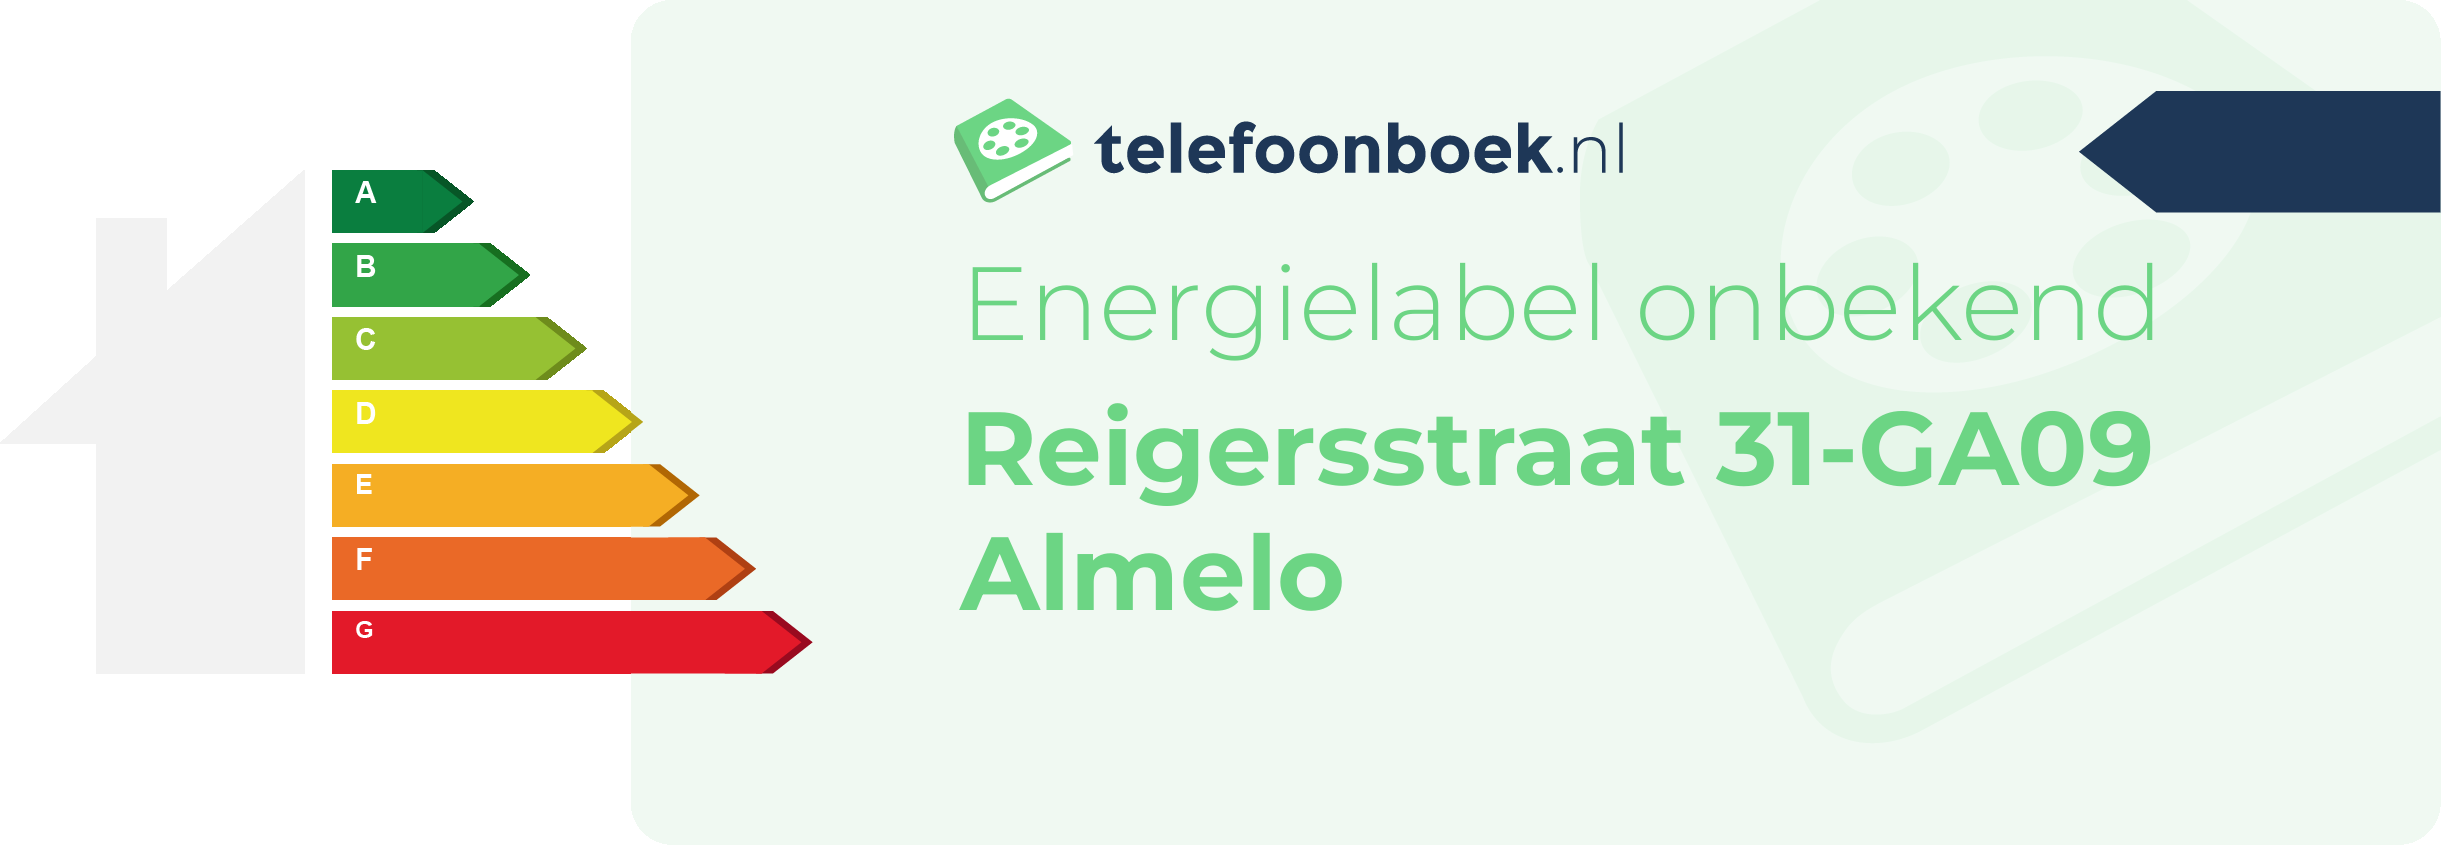 Energielabel Reigersstraat 31-GA09 Almelo